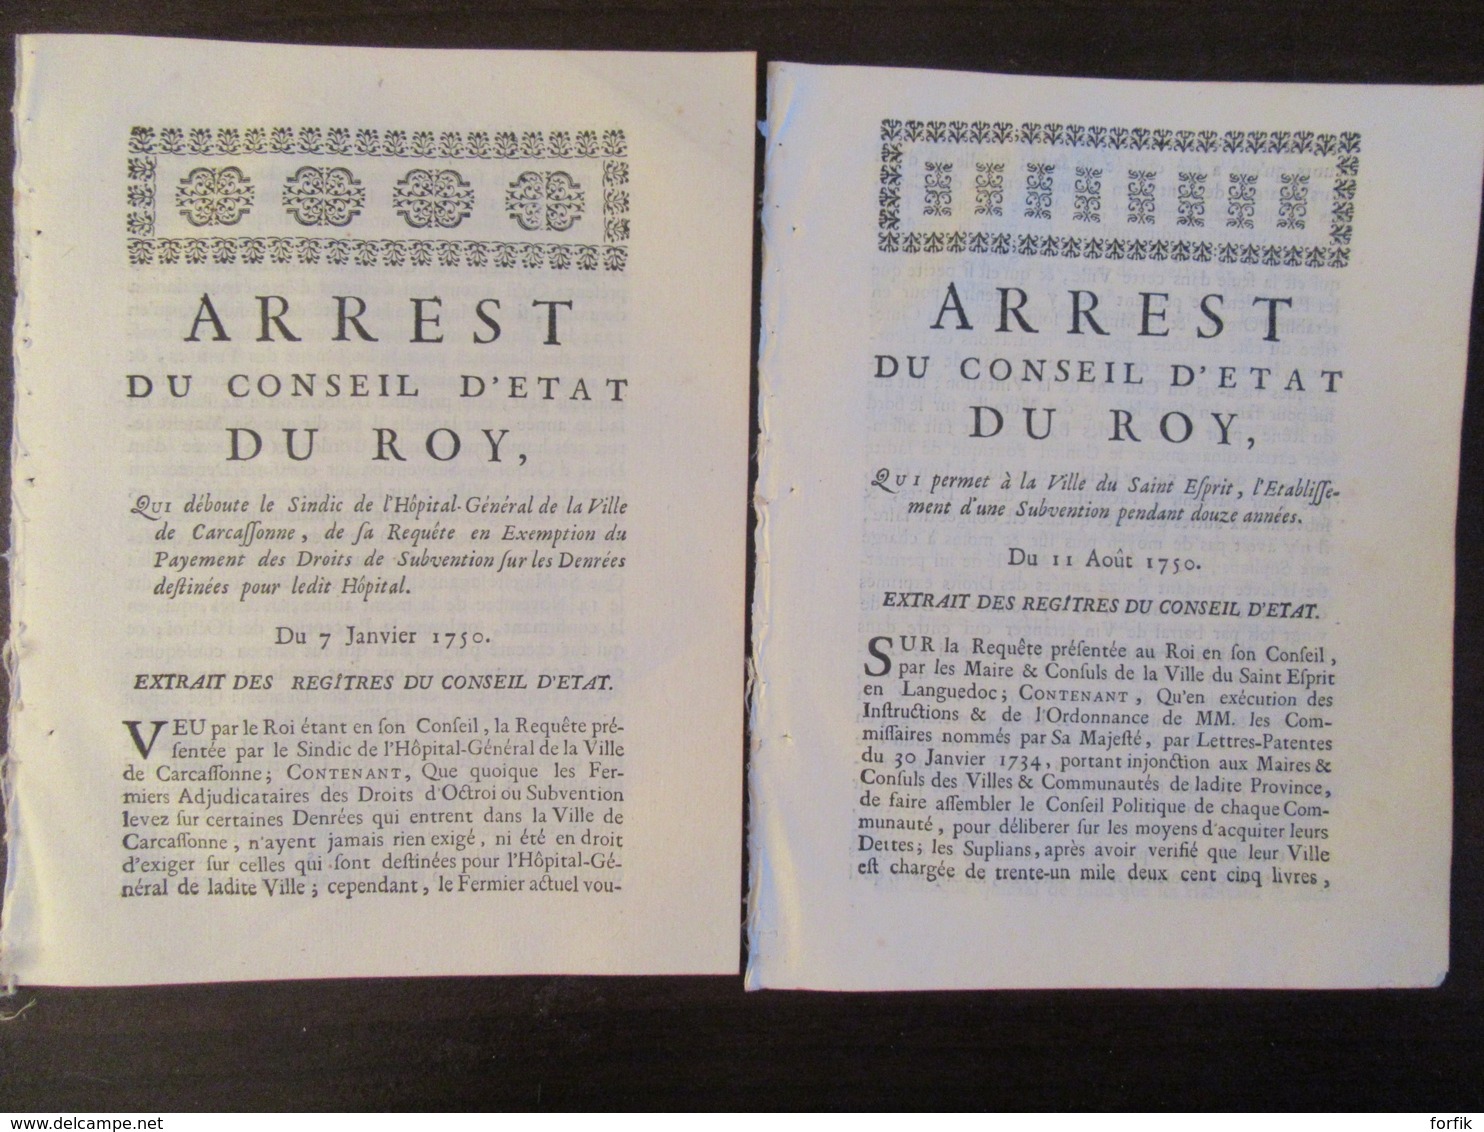 Epoque Louis XV - 2 Documents Anciens - Arrest Du Conseil D'Etat Du Roy / Roi - 7 Janvier Et 11 Août 1750 - Historical Documents